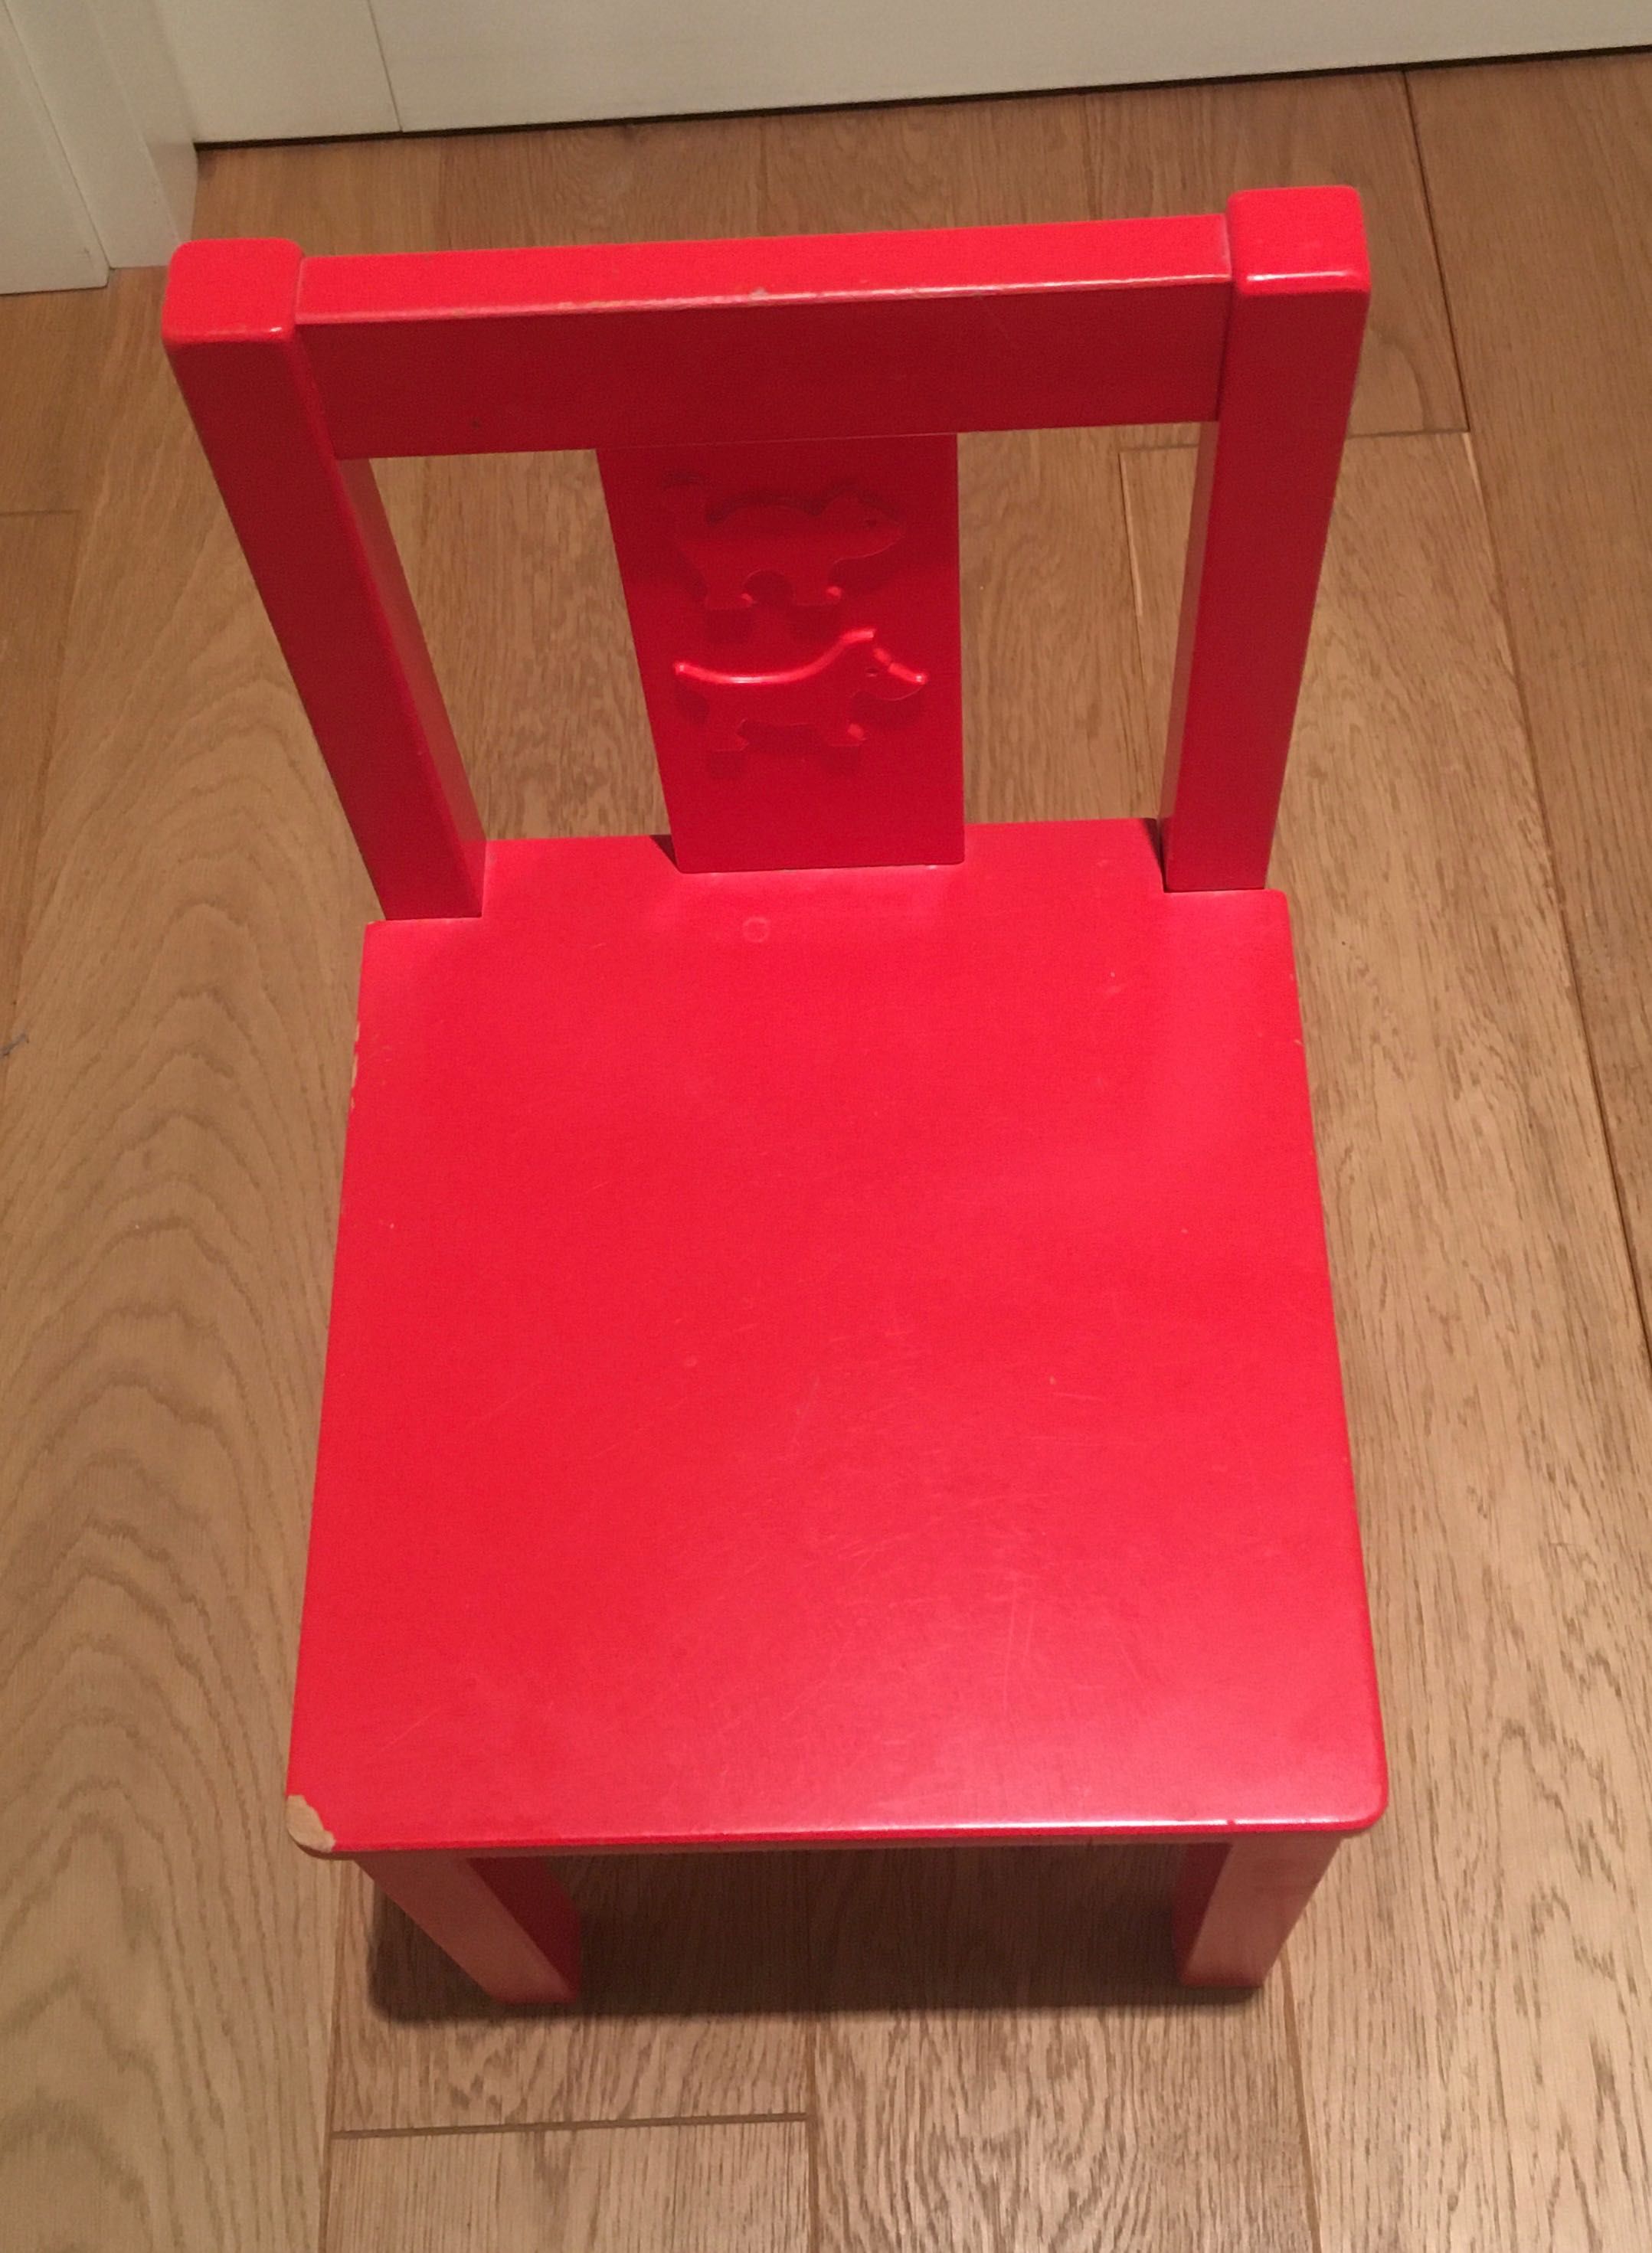 IKEA KRITTER  BIały stolik i czerwone krzesełko 20948, 15916